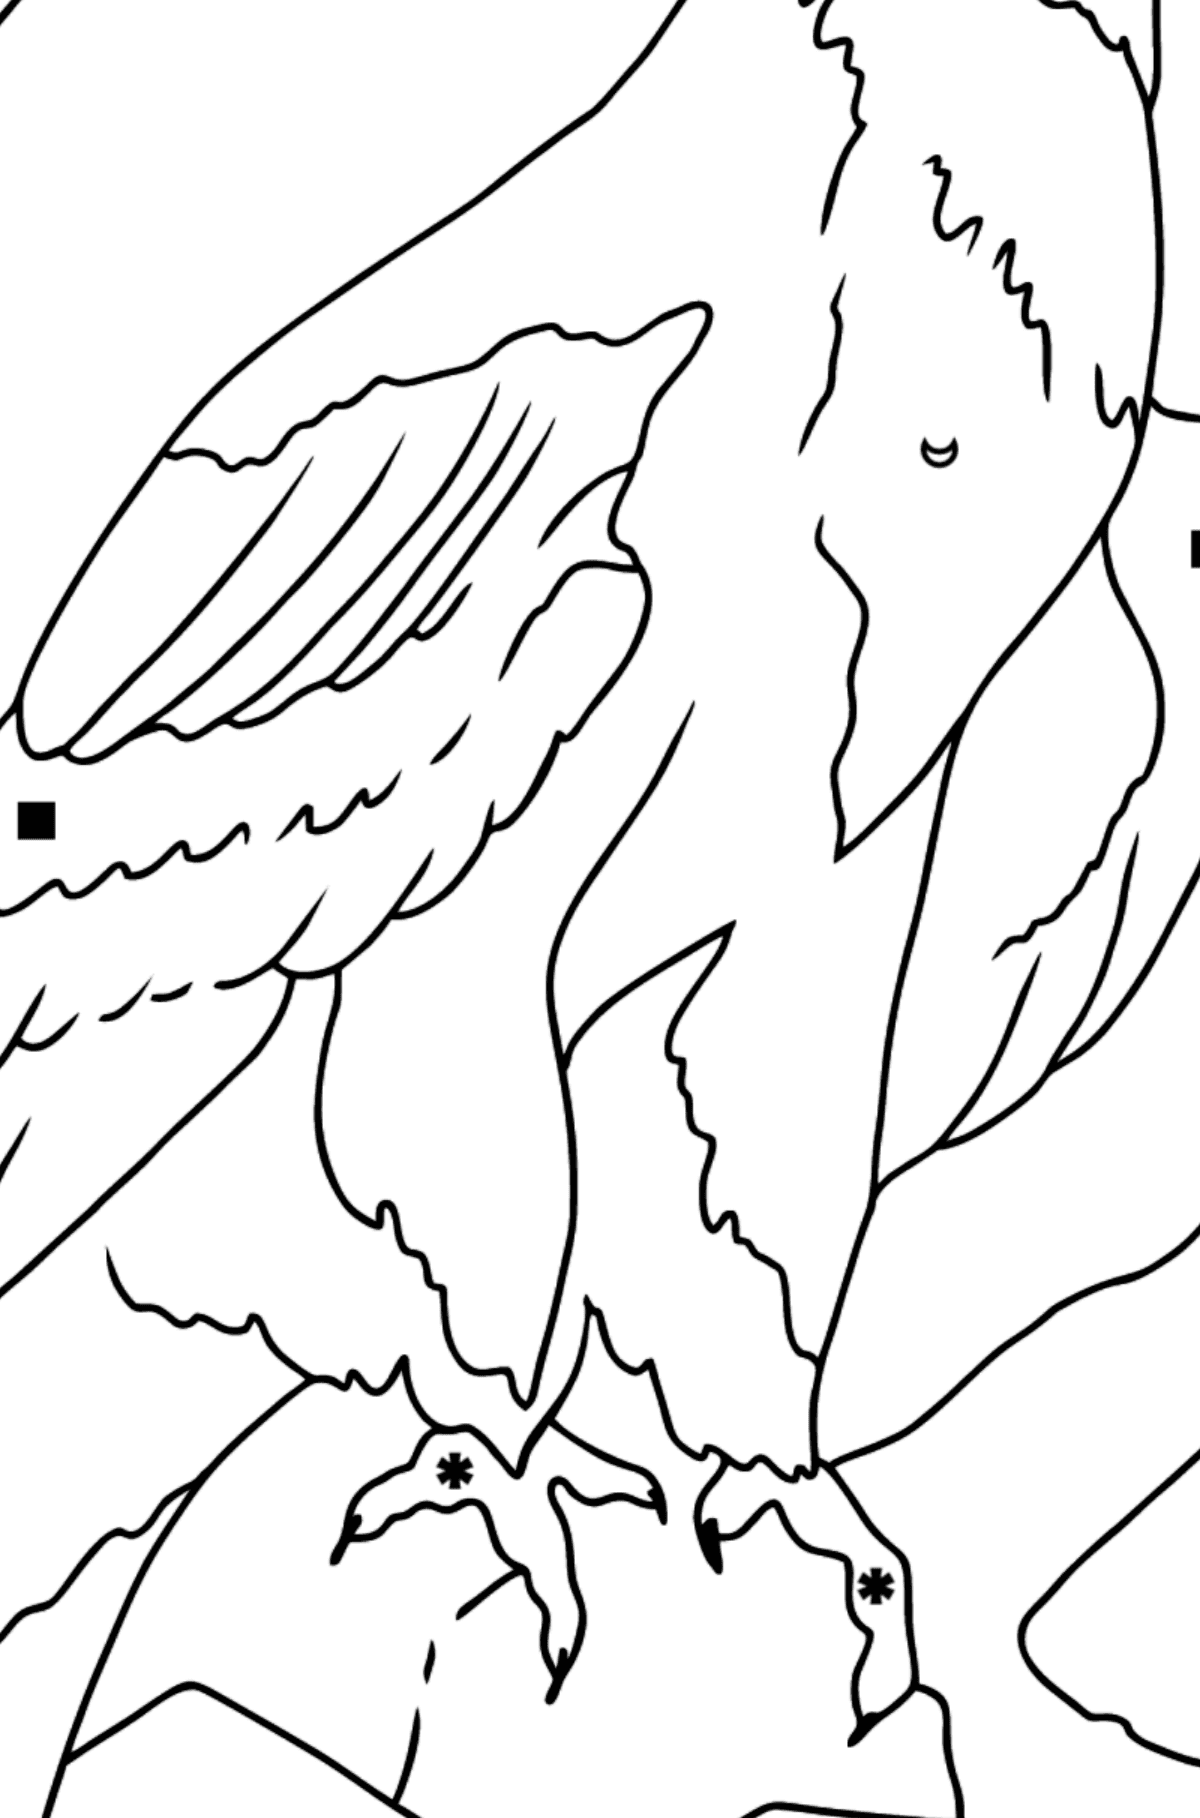 Coloriage - Un aigle en chasse - Coloriage par Symboles pour les Enfants